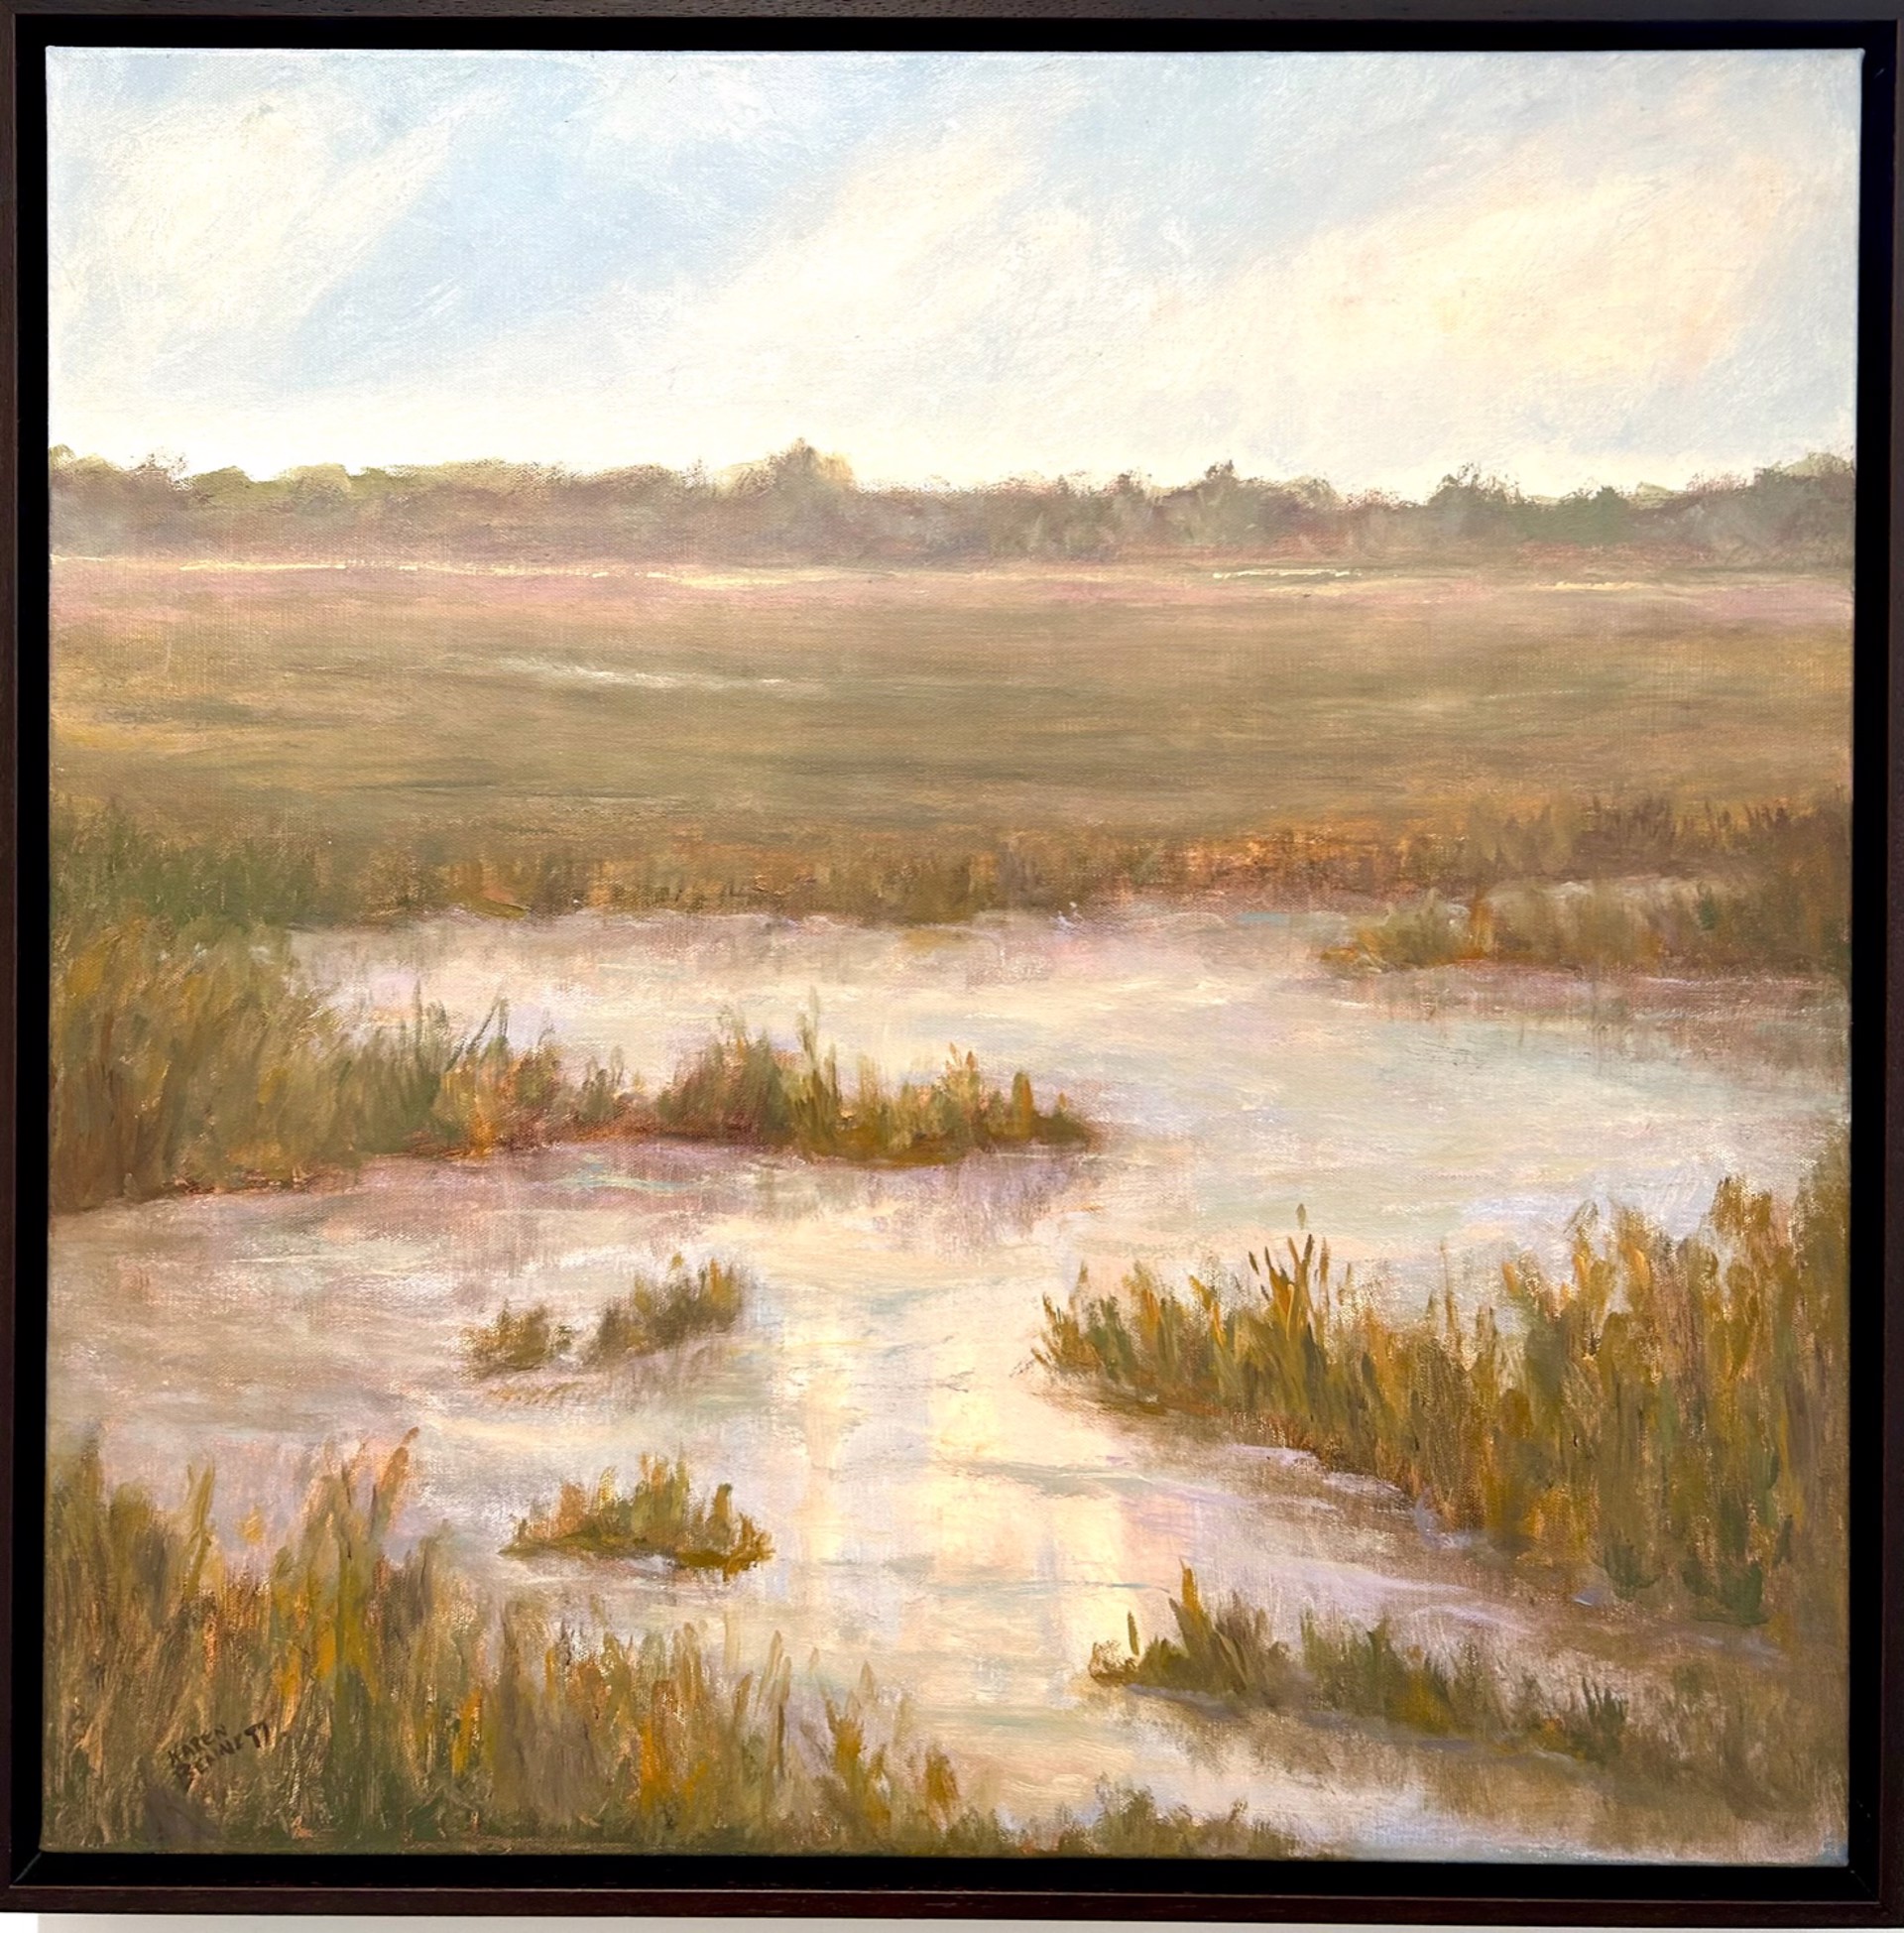 Marshy Day by Karen Bennett